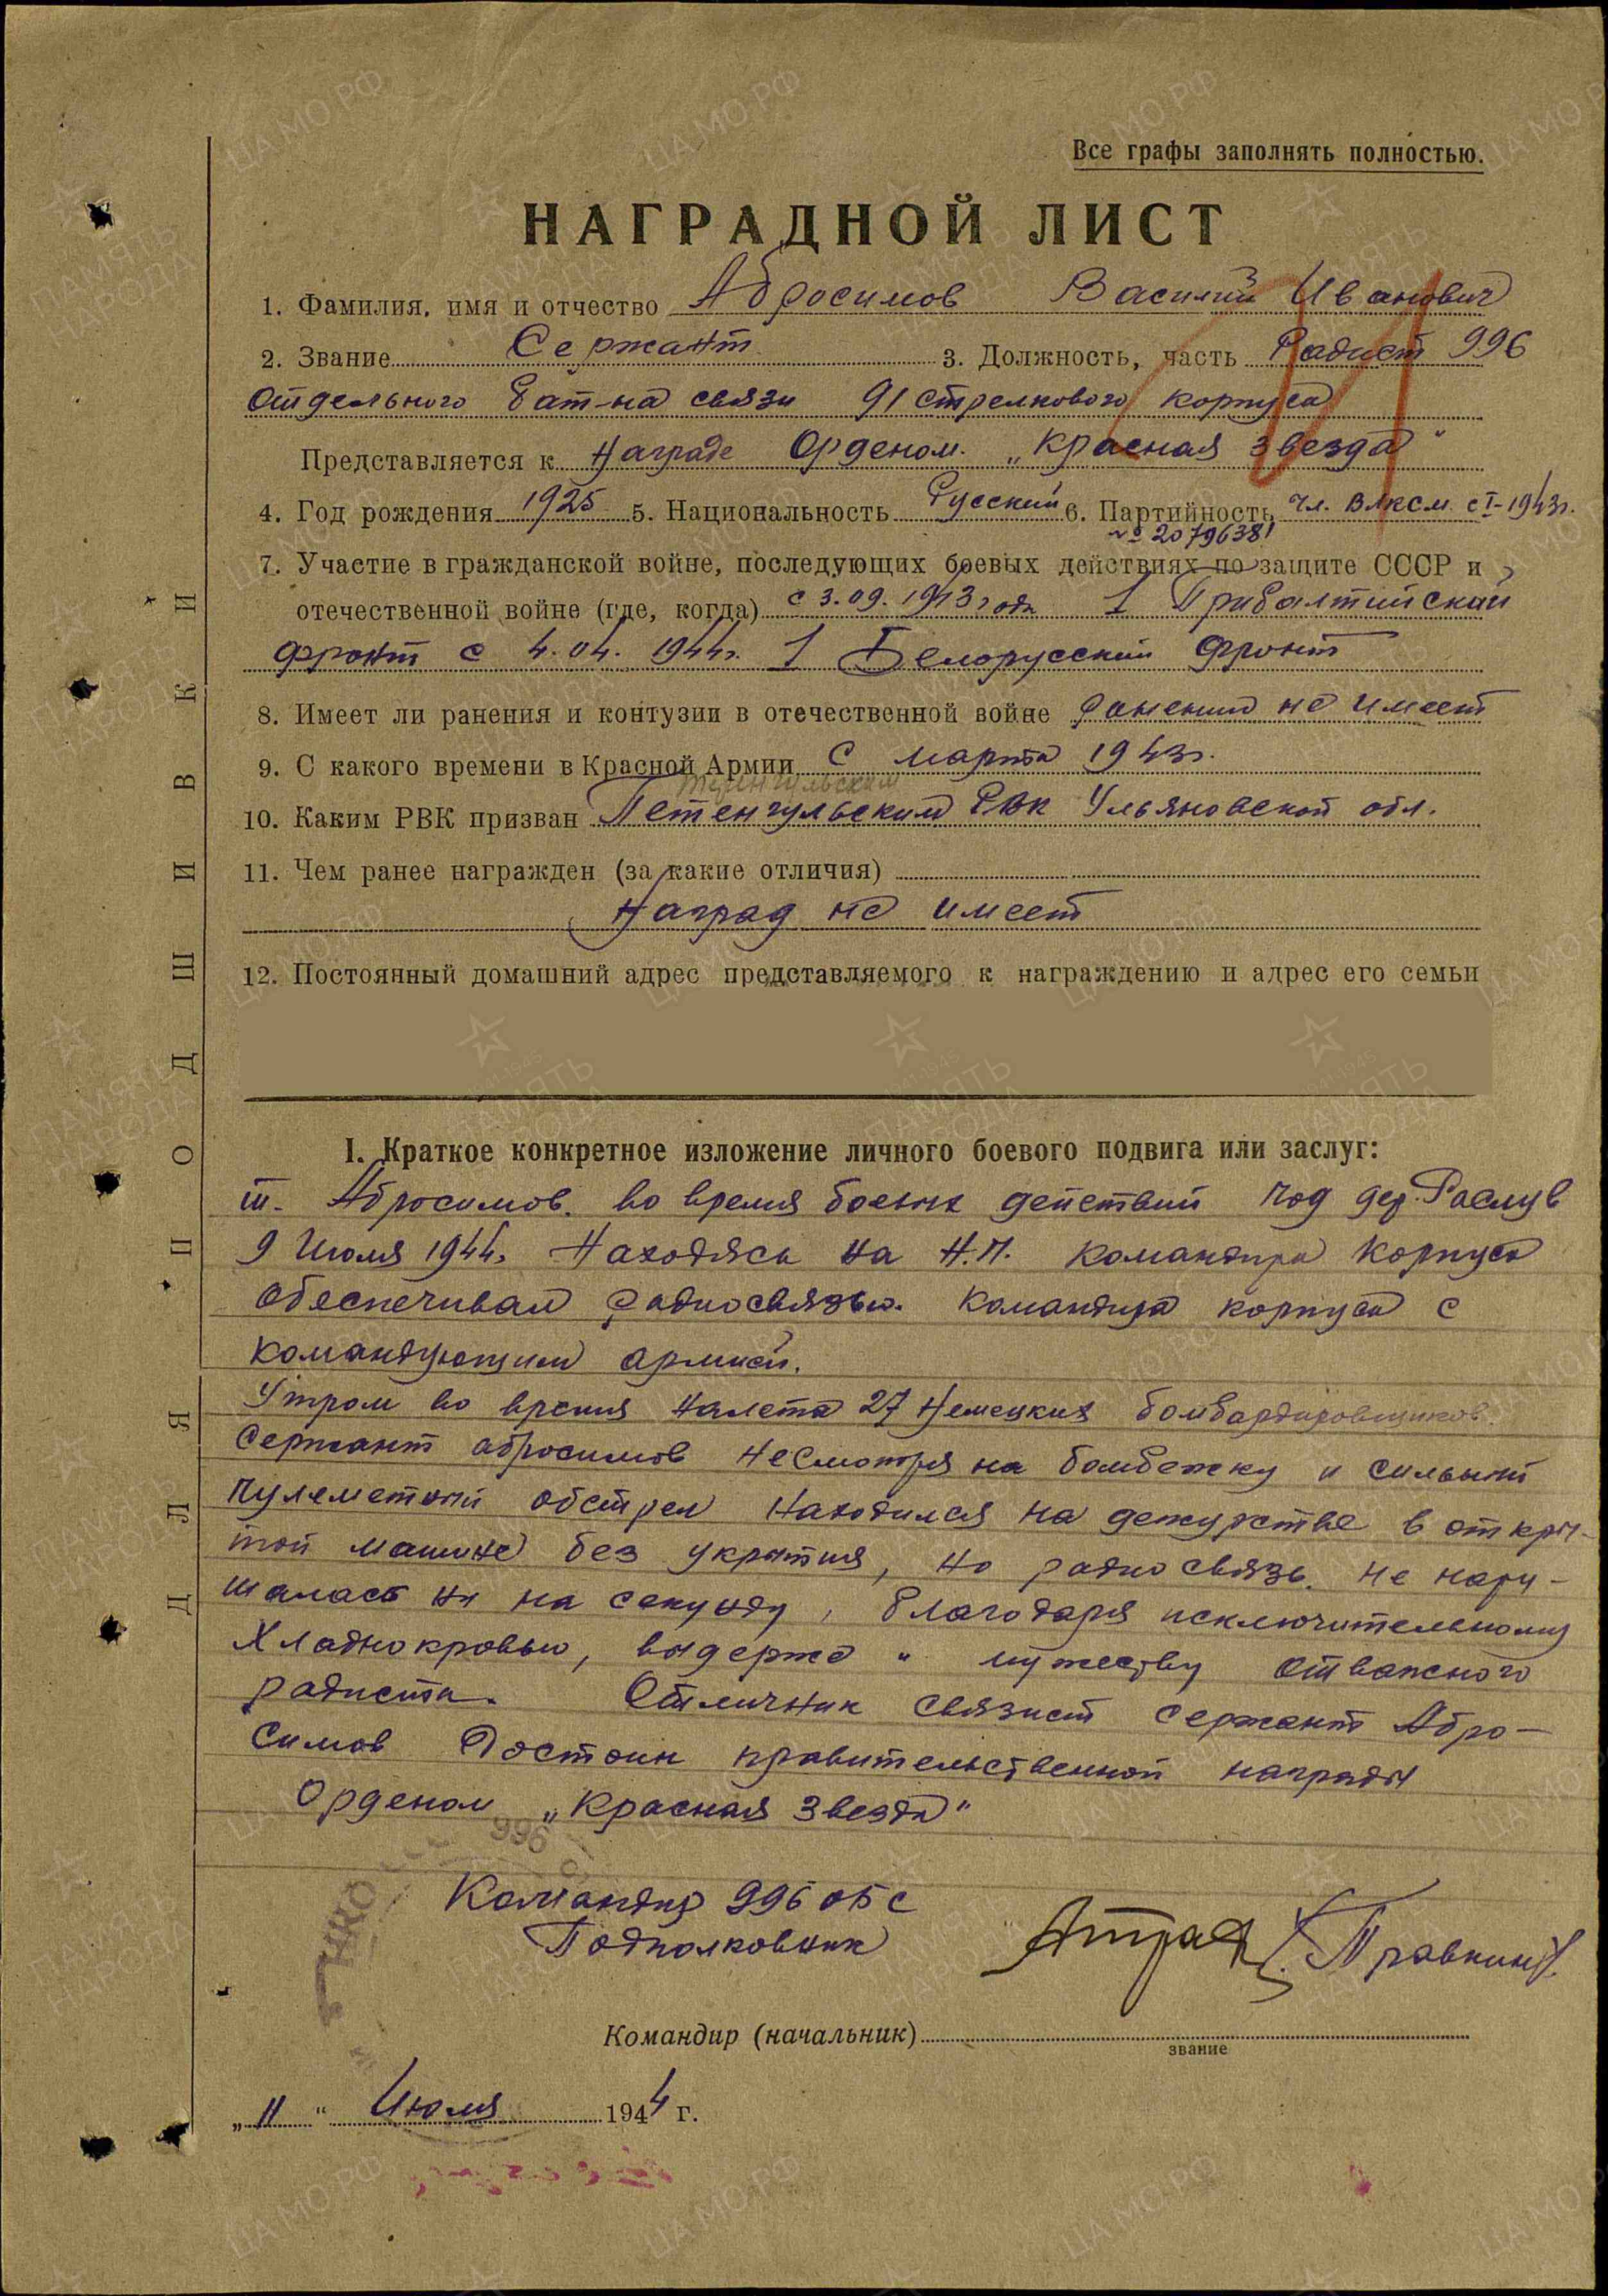 Абросимов В.И. Наградной лист от 11.07.1944 г. к медали «За отвагу» (архивная копия)